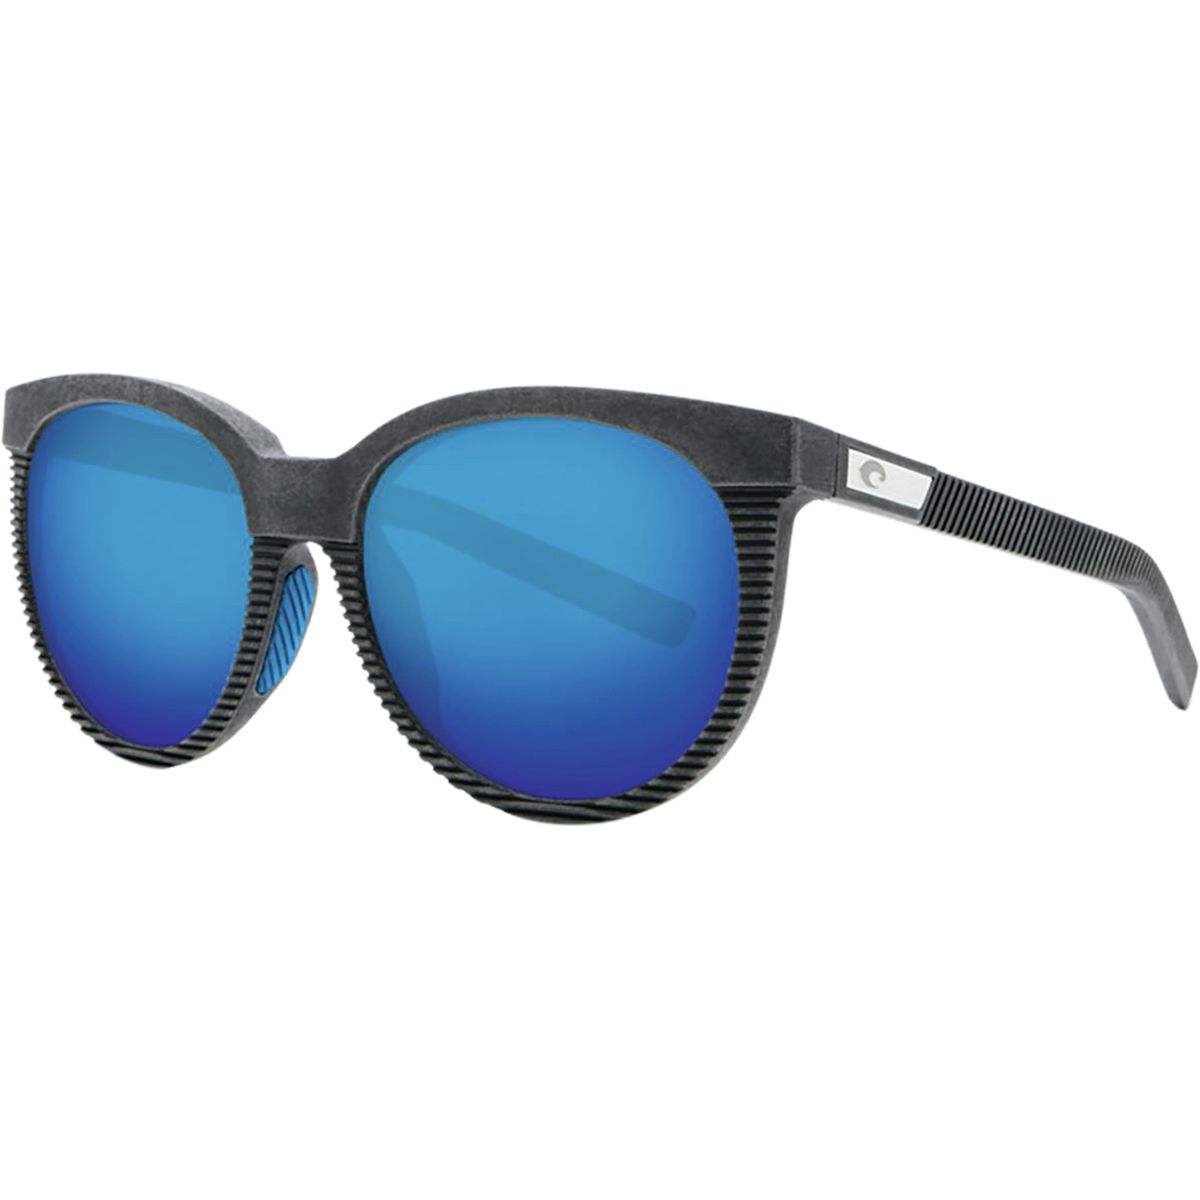 Costa Victoria 580G Polarized Sunglasses